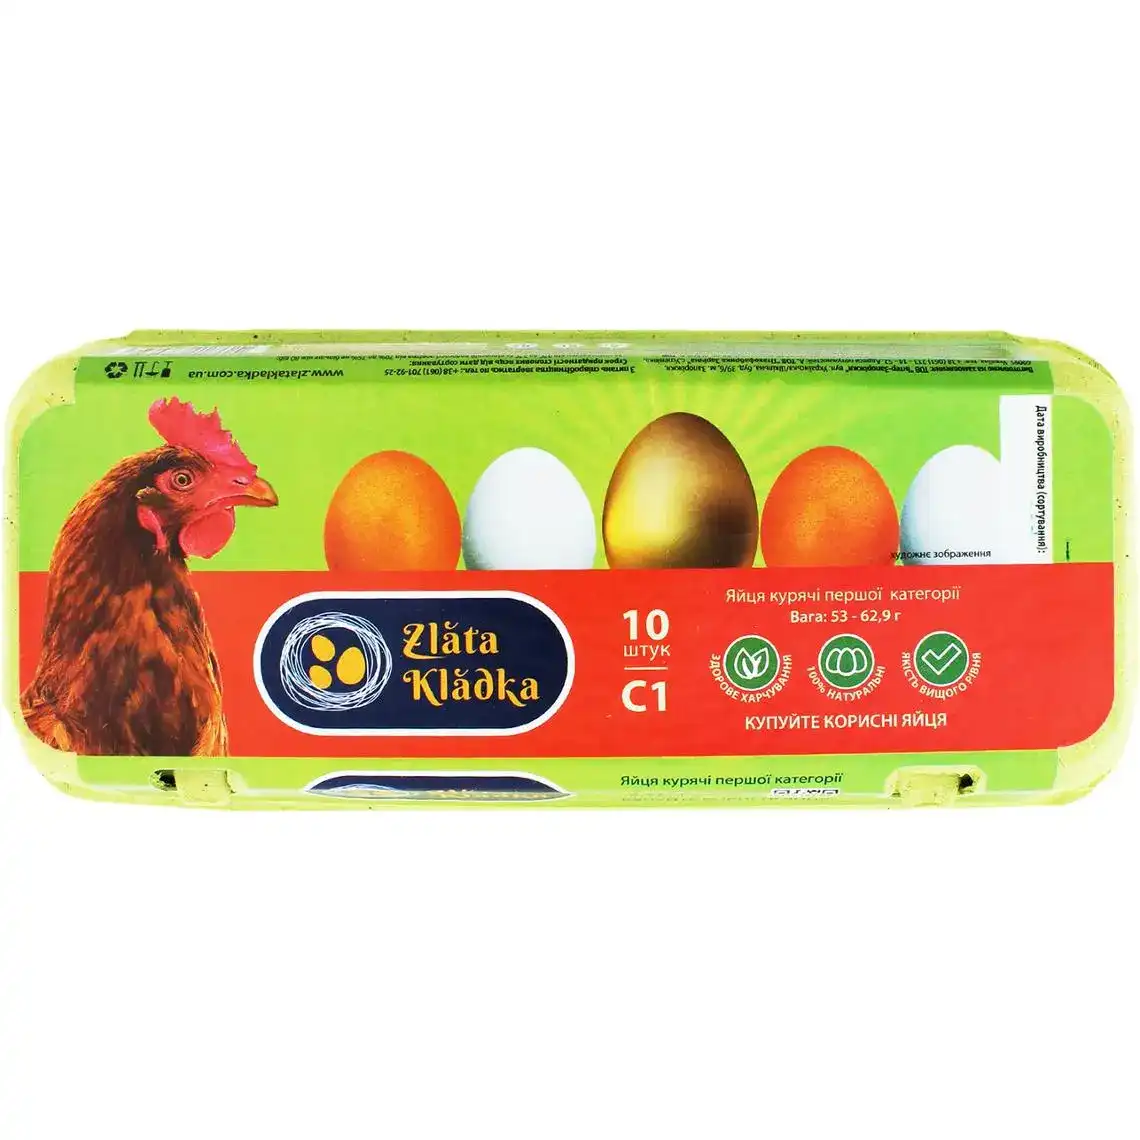 Яйца Zlata Kladka куриные первой категории 10 шт